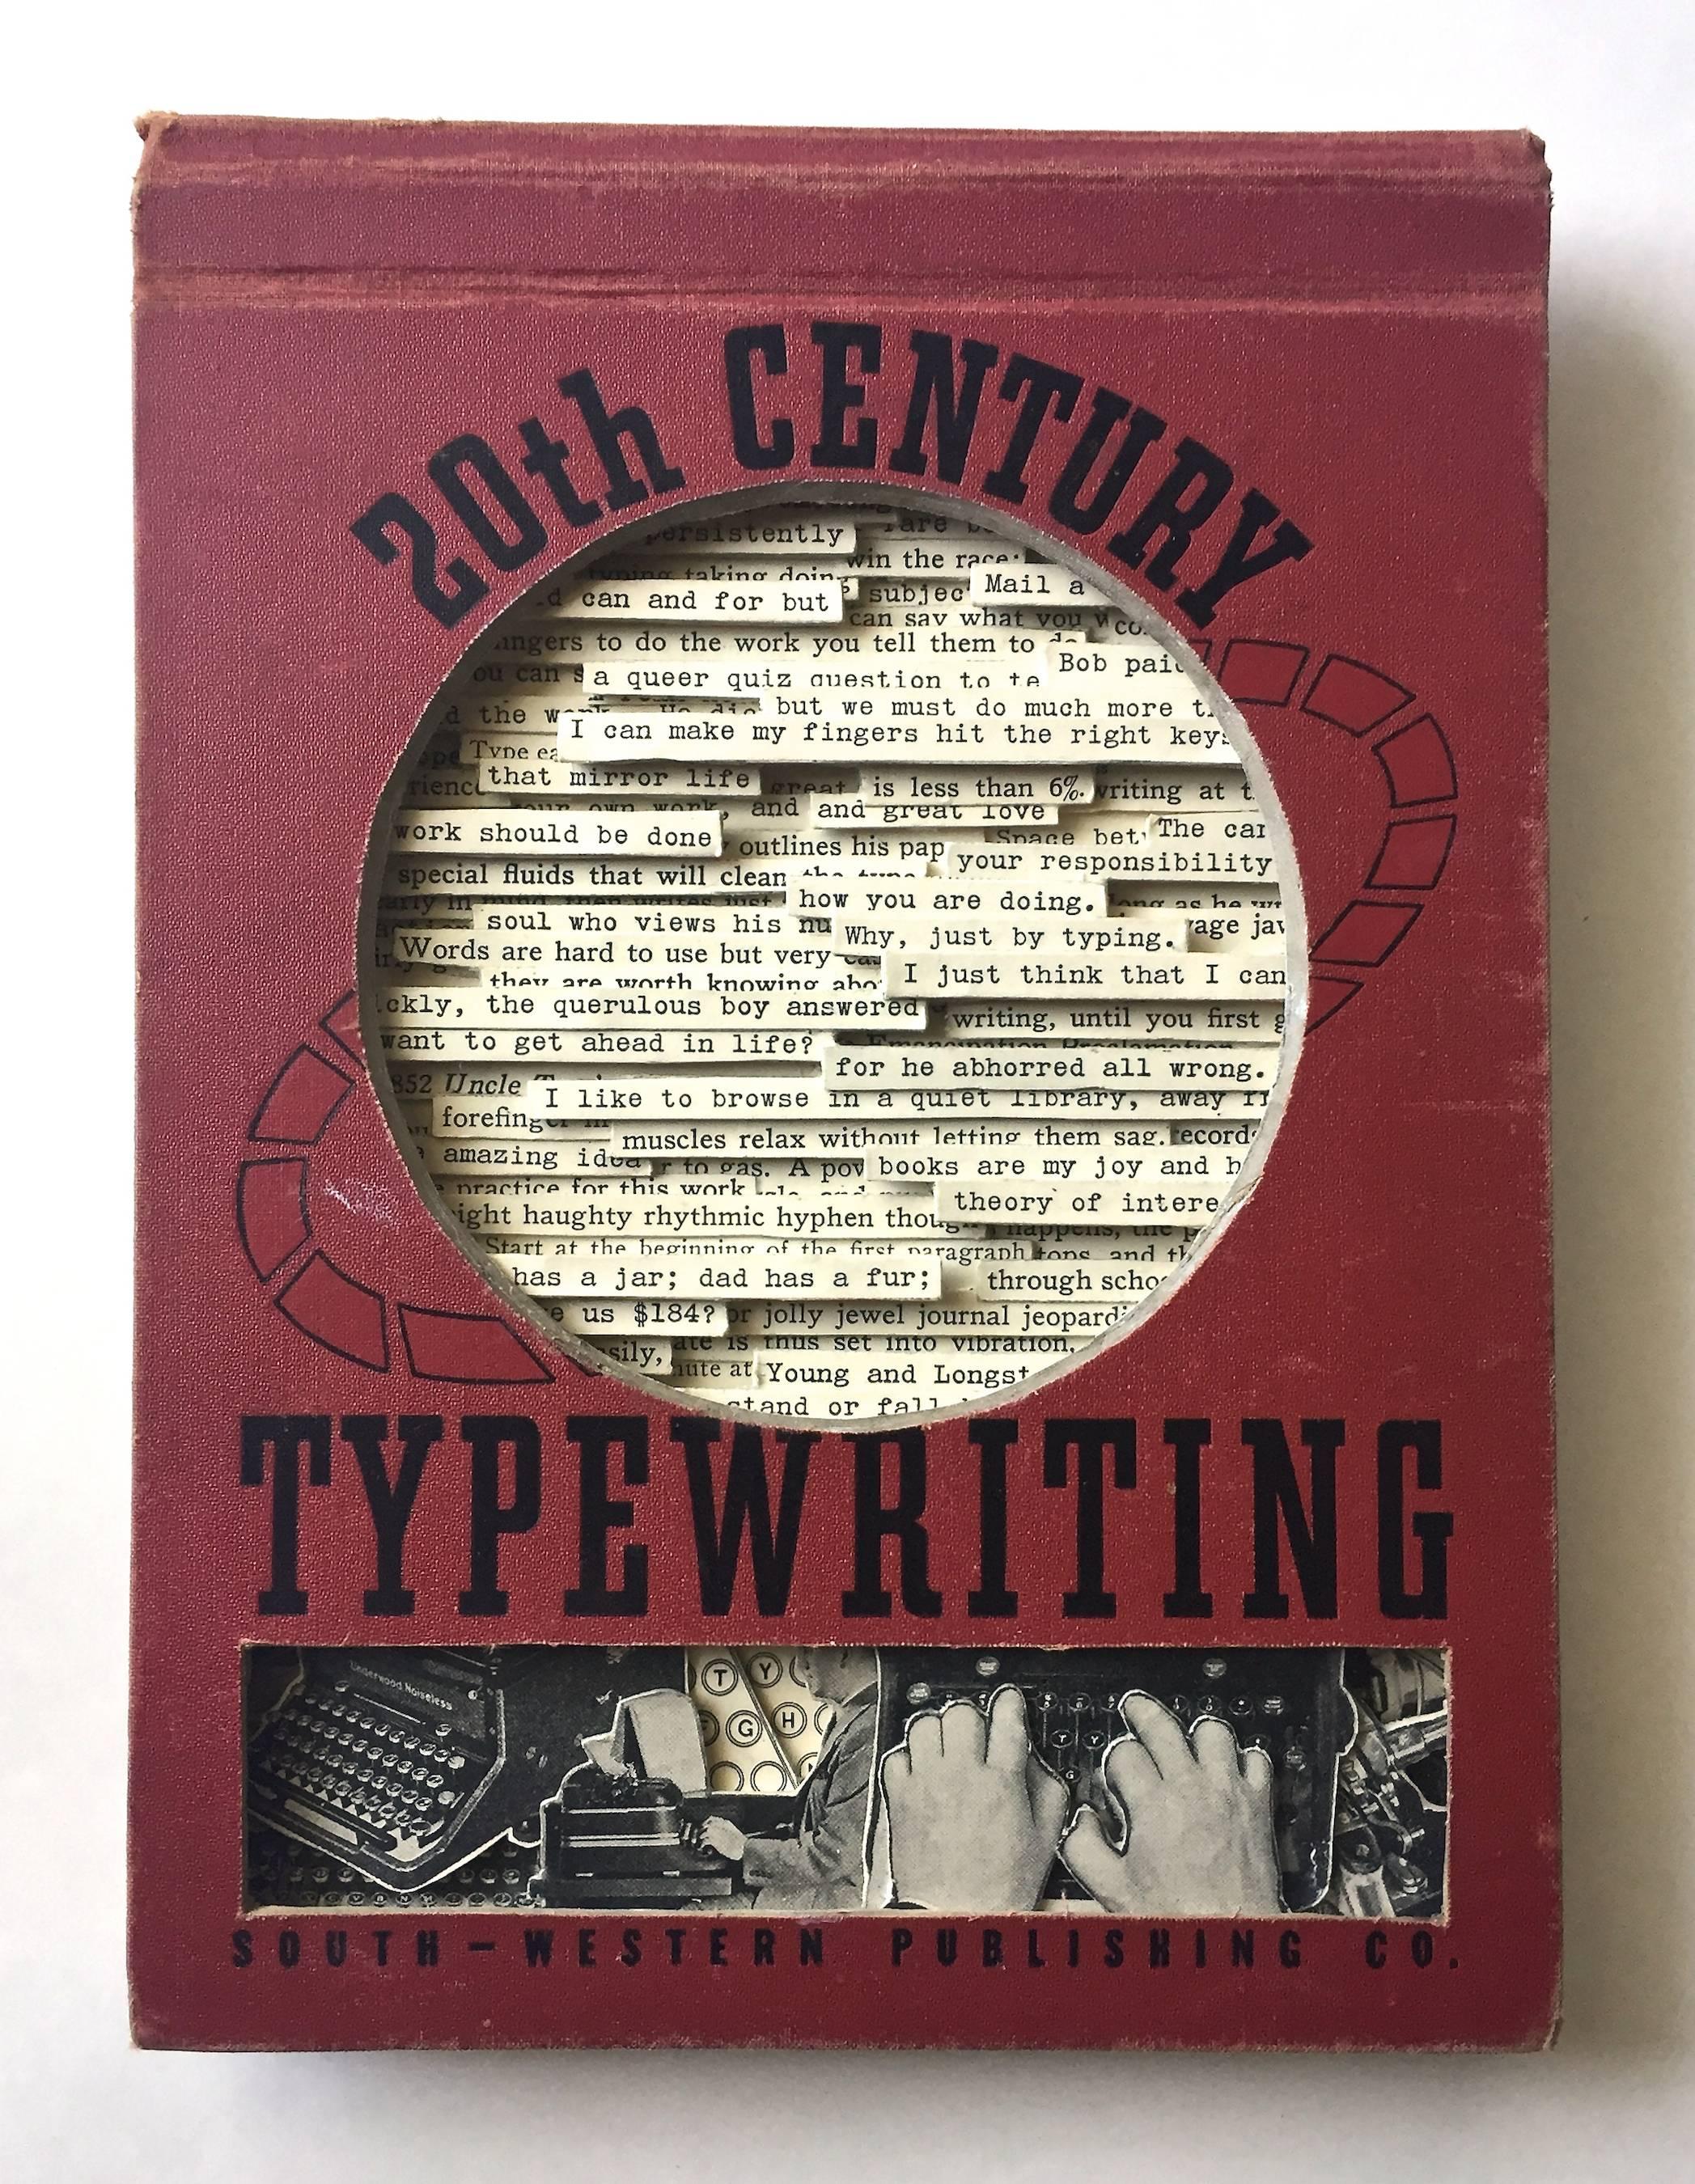 20th Century Typewriting  - Mixed Media Art by Tony Dagradi